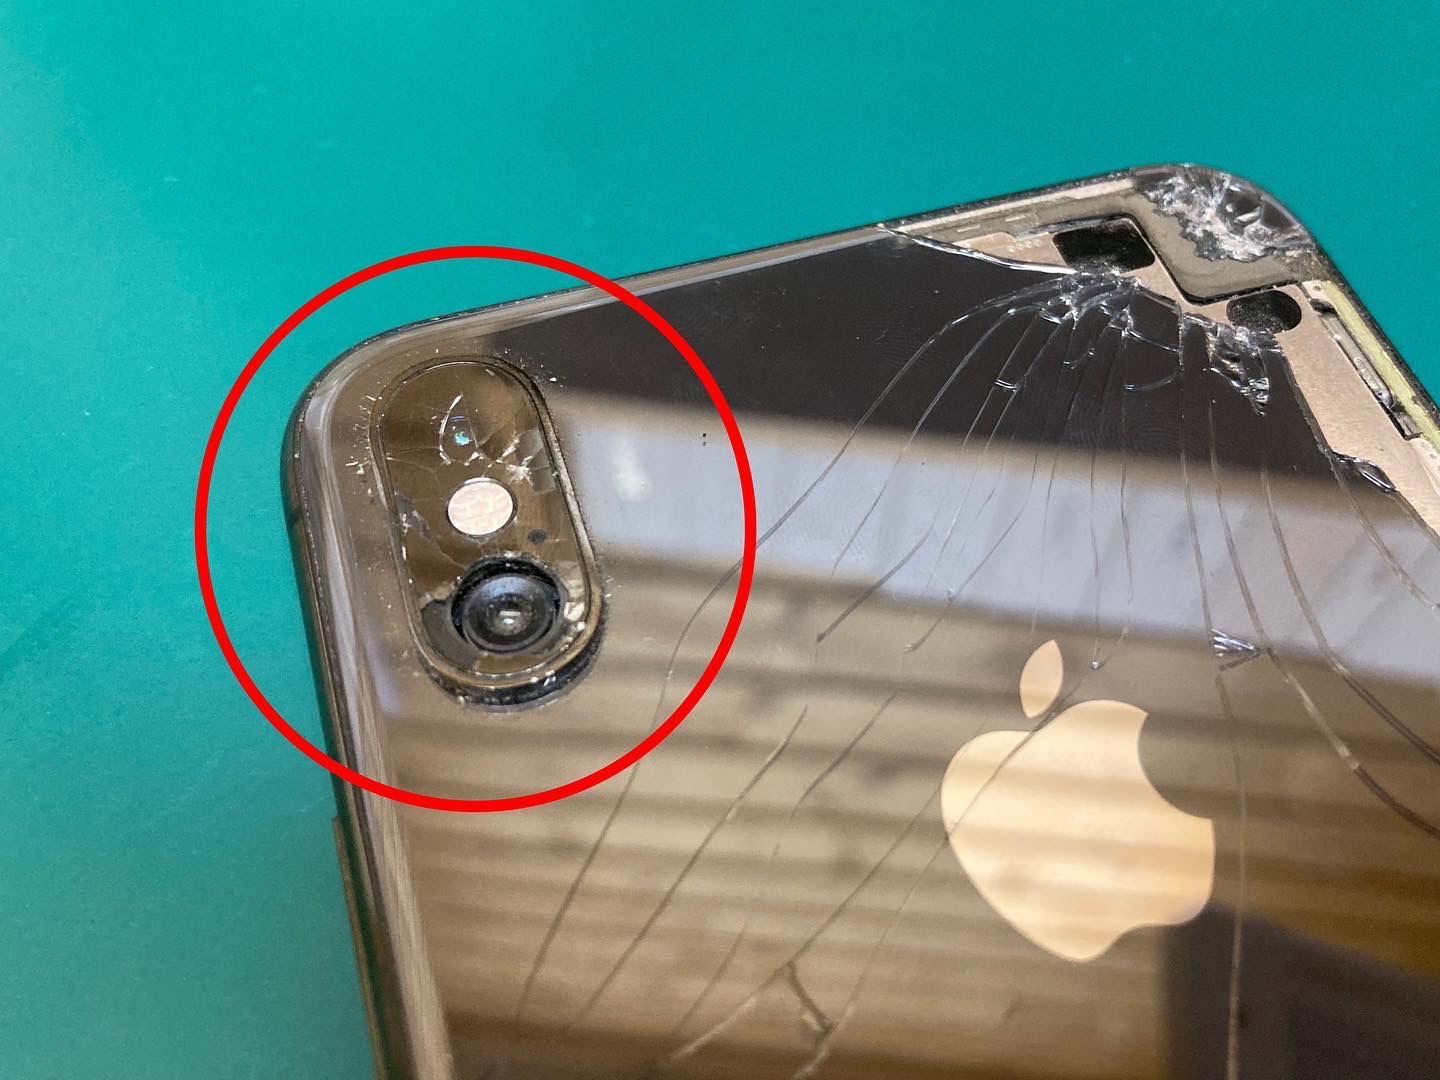 iPhoneカメラレンズひび割れの放置で、本体故障や水没故障のリスクが高まります。ご注意ください。